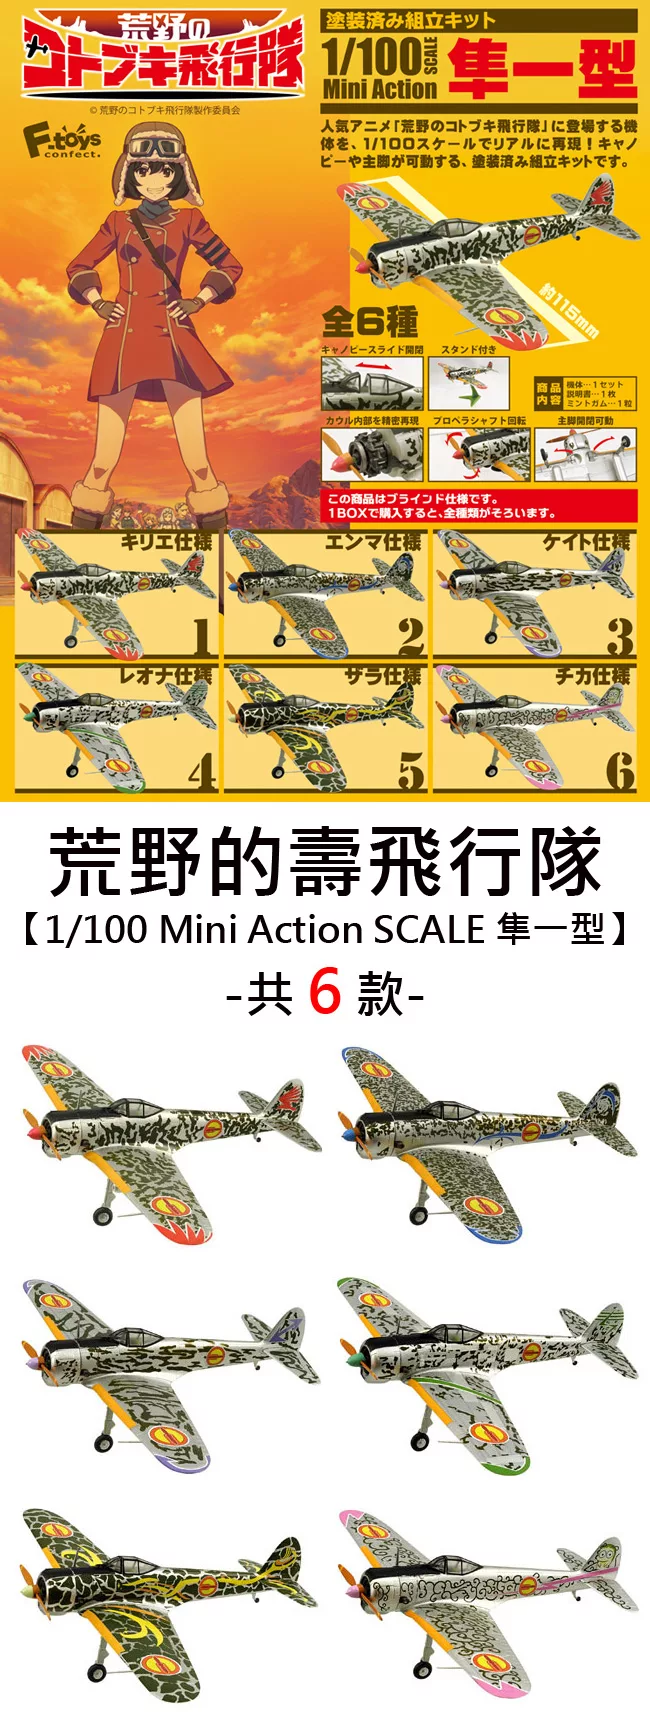 博客來 日本正版授權 盒裝6款1 100 荒野的壽飛行隊隼一型盒玩 模型飛機模型mini Action F Toys